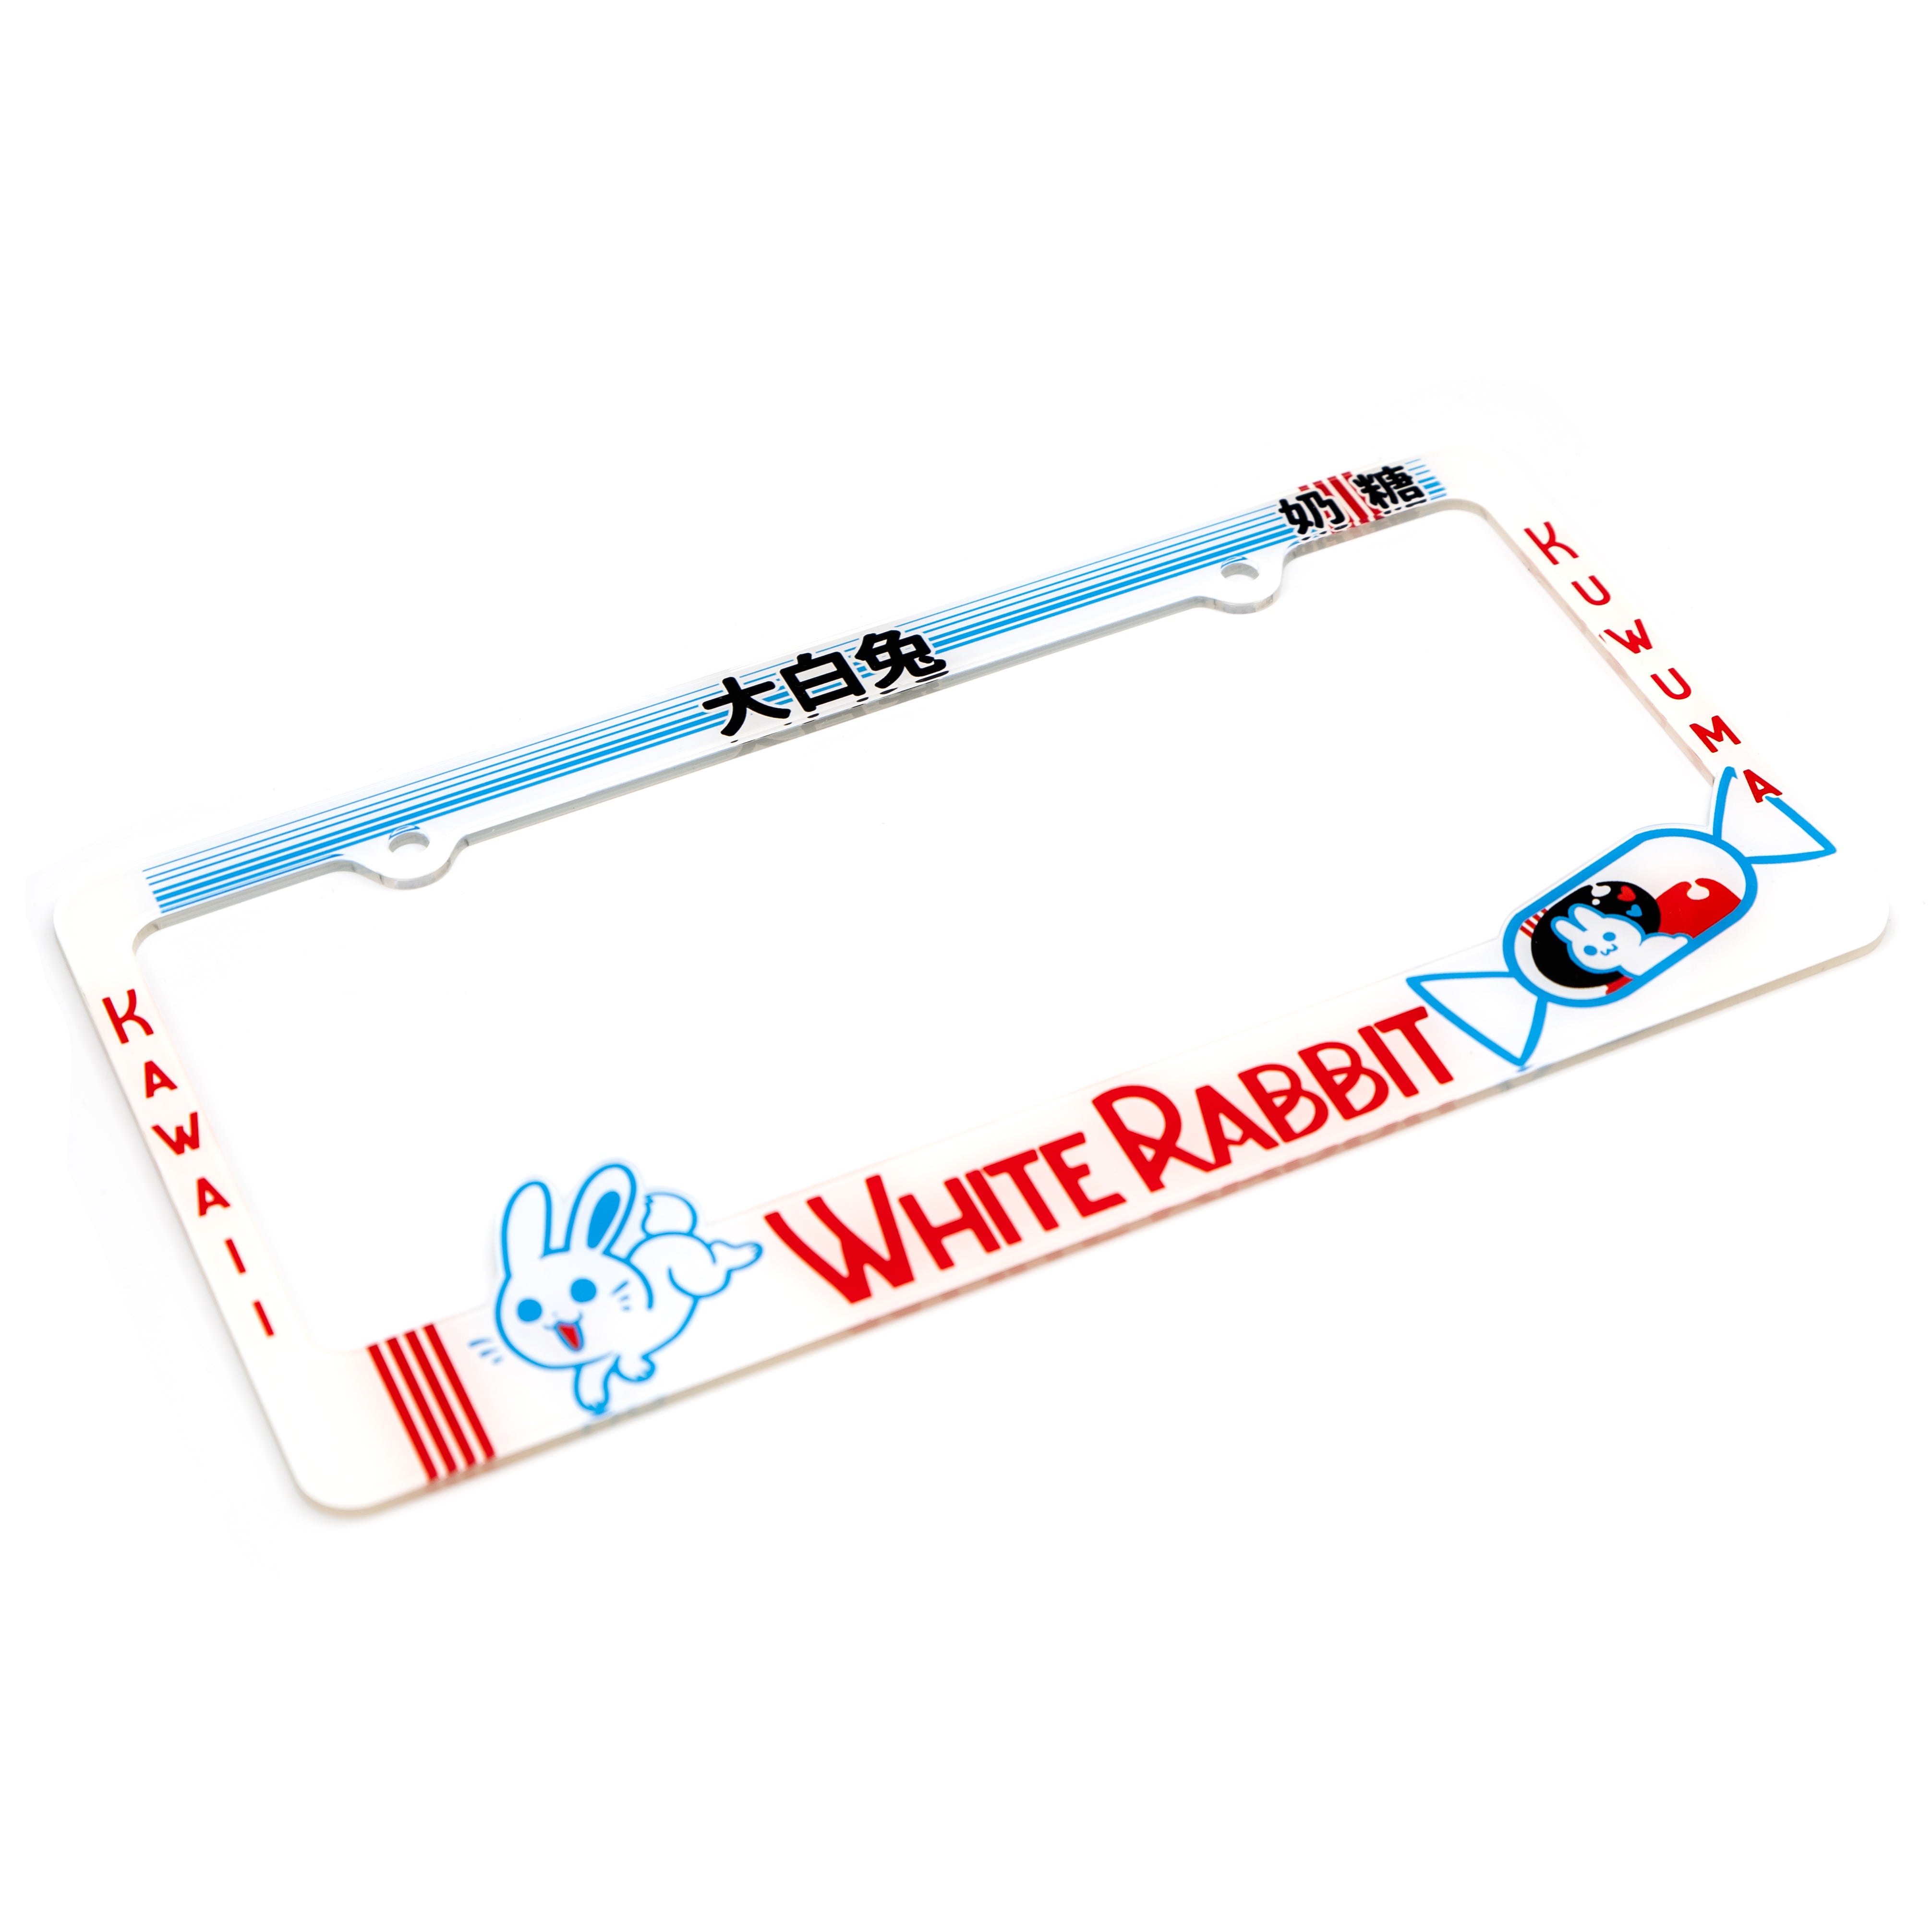 White Rabbit License Plate Frame